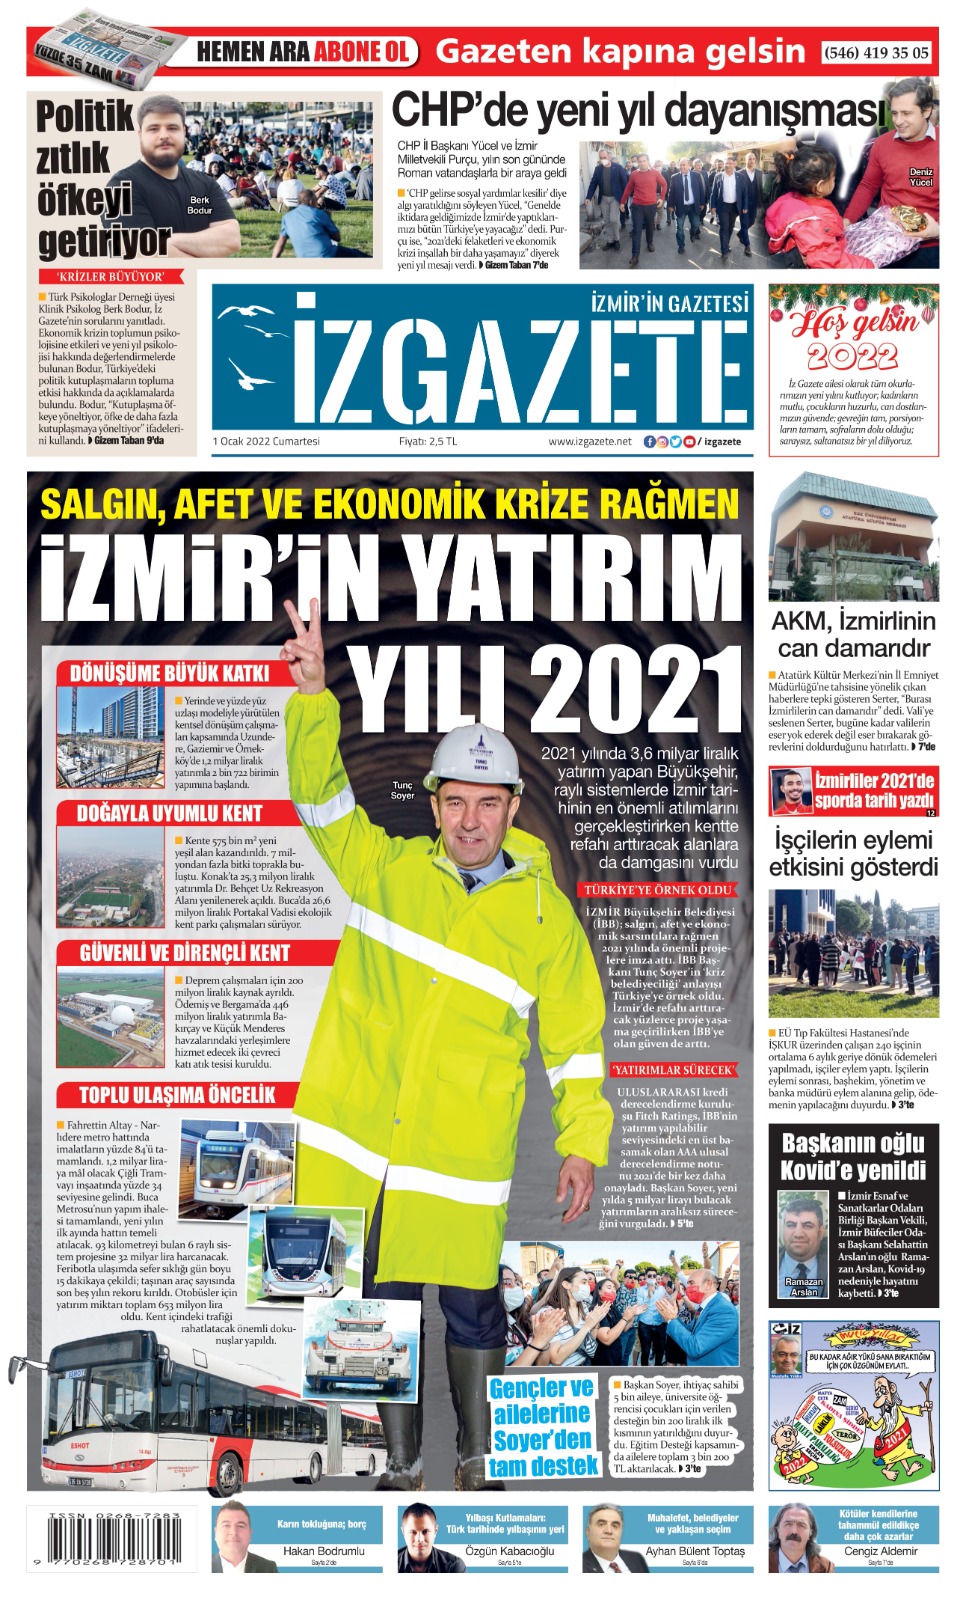 İz Gazete - İzmir'in Gazetesi - 01.01.2022 Manşeti